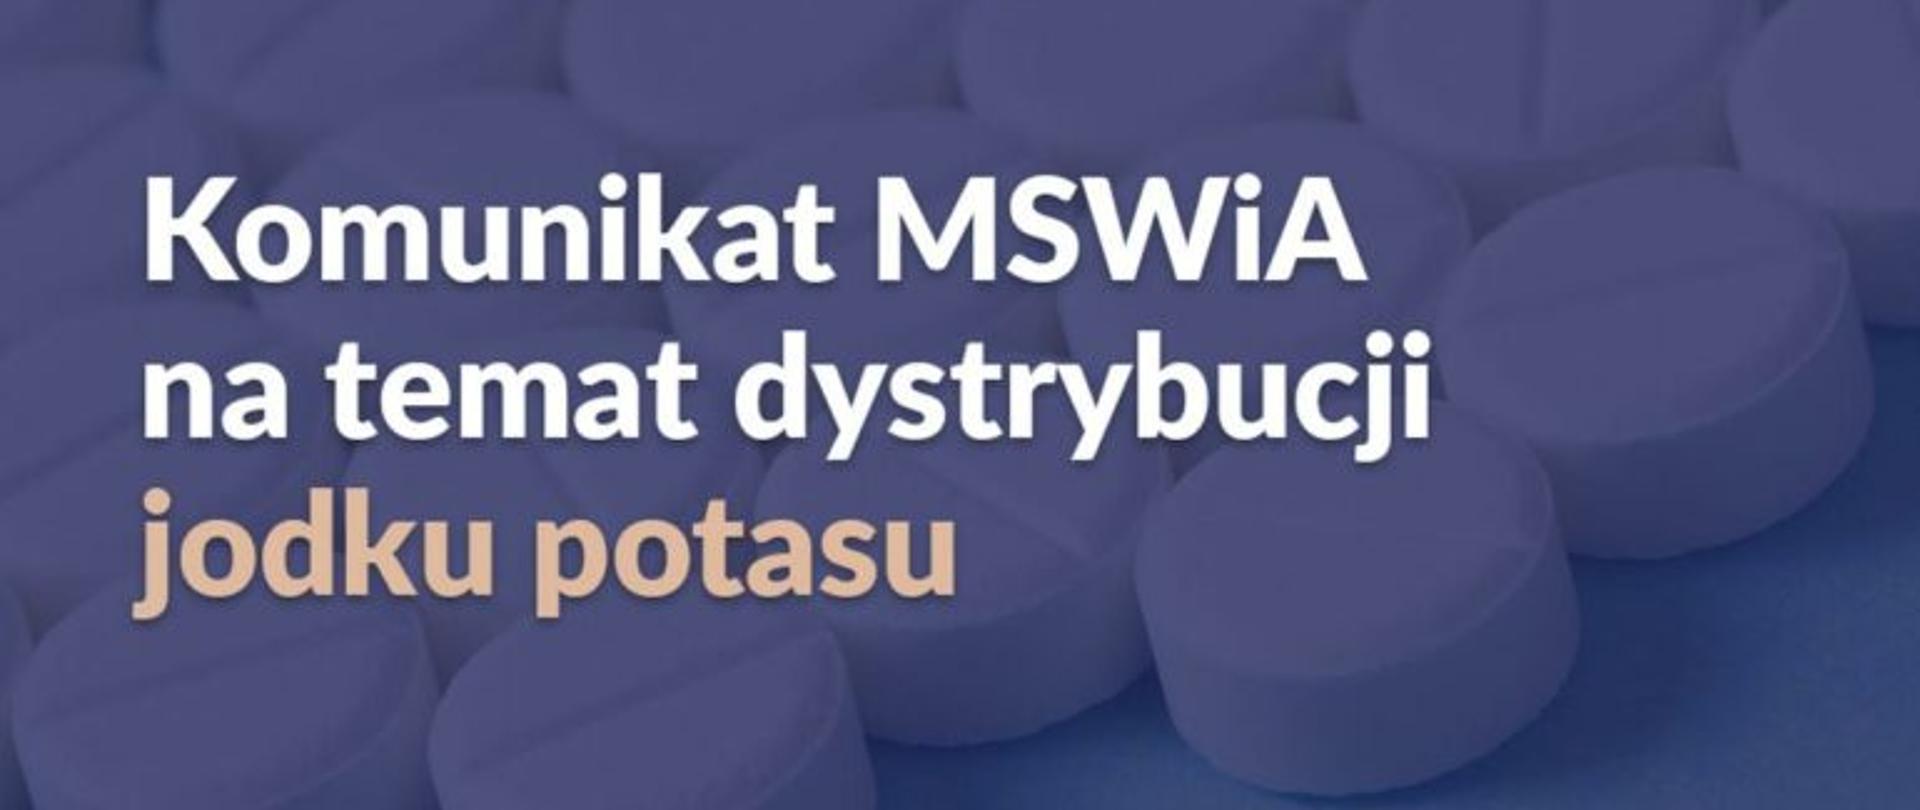 Napis na fioletowym tle: Komunikat MSWiA na temat dystrybucji jodku potasu